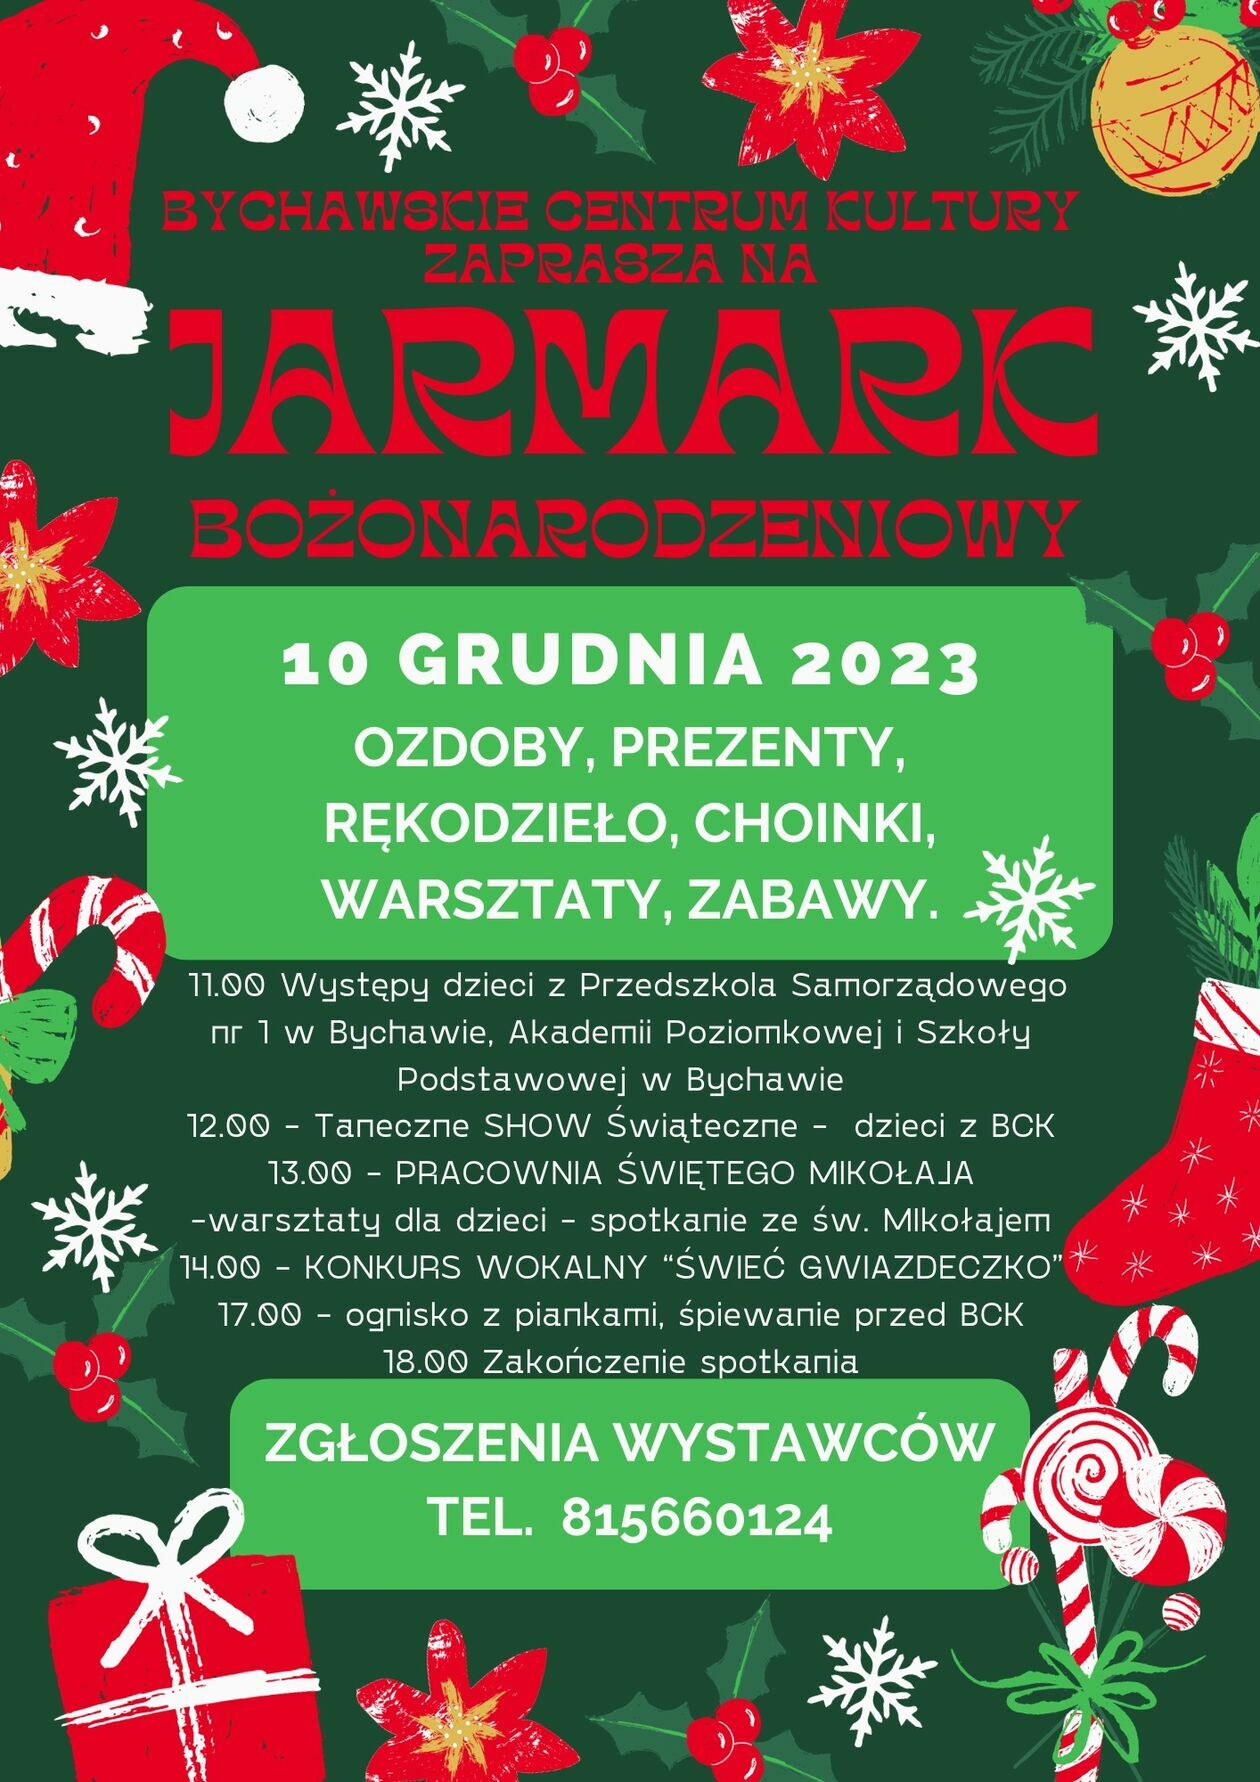  <p>Data: 10 grudnia w godzinach 11-18</p>
<p>Miejsce: Bychawskie Centrum Kultury, Piłsudskiego 34</p>